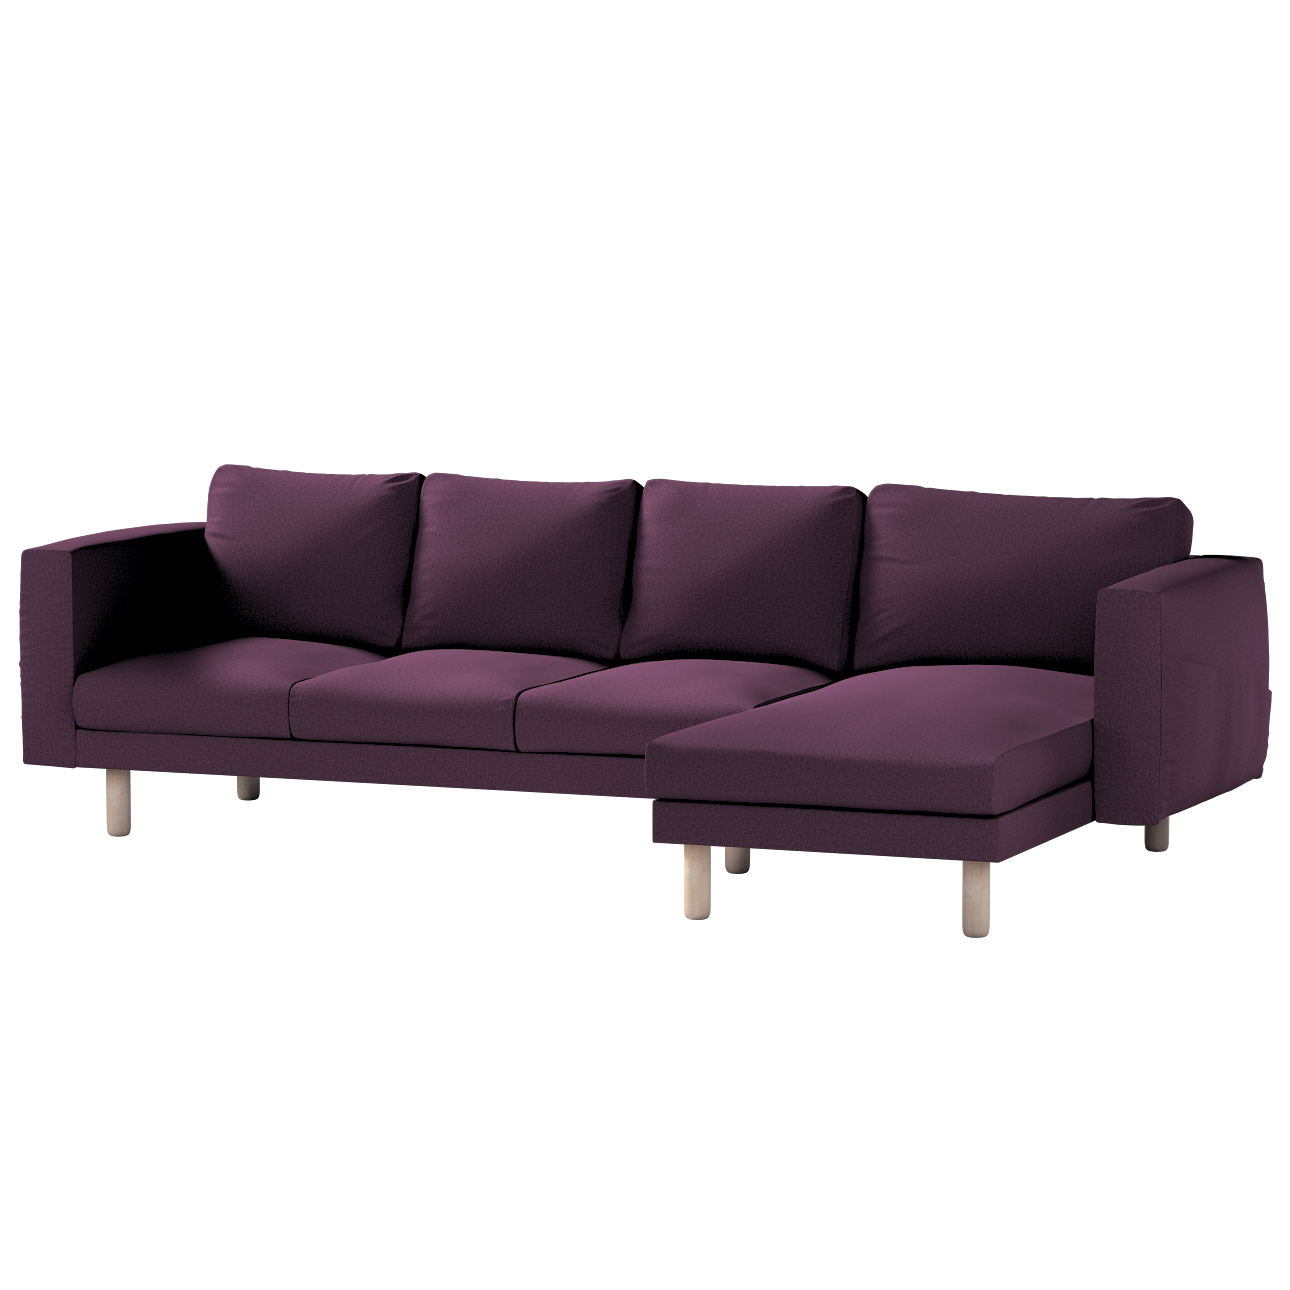 Bezug für Norsborg 4-Sitzer Sofa mit Recamiere, pflaume, Norsborg Bezug für günstig online kaufen